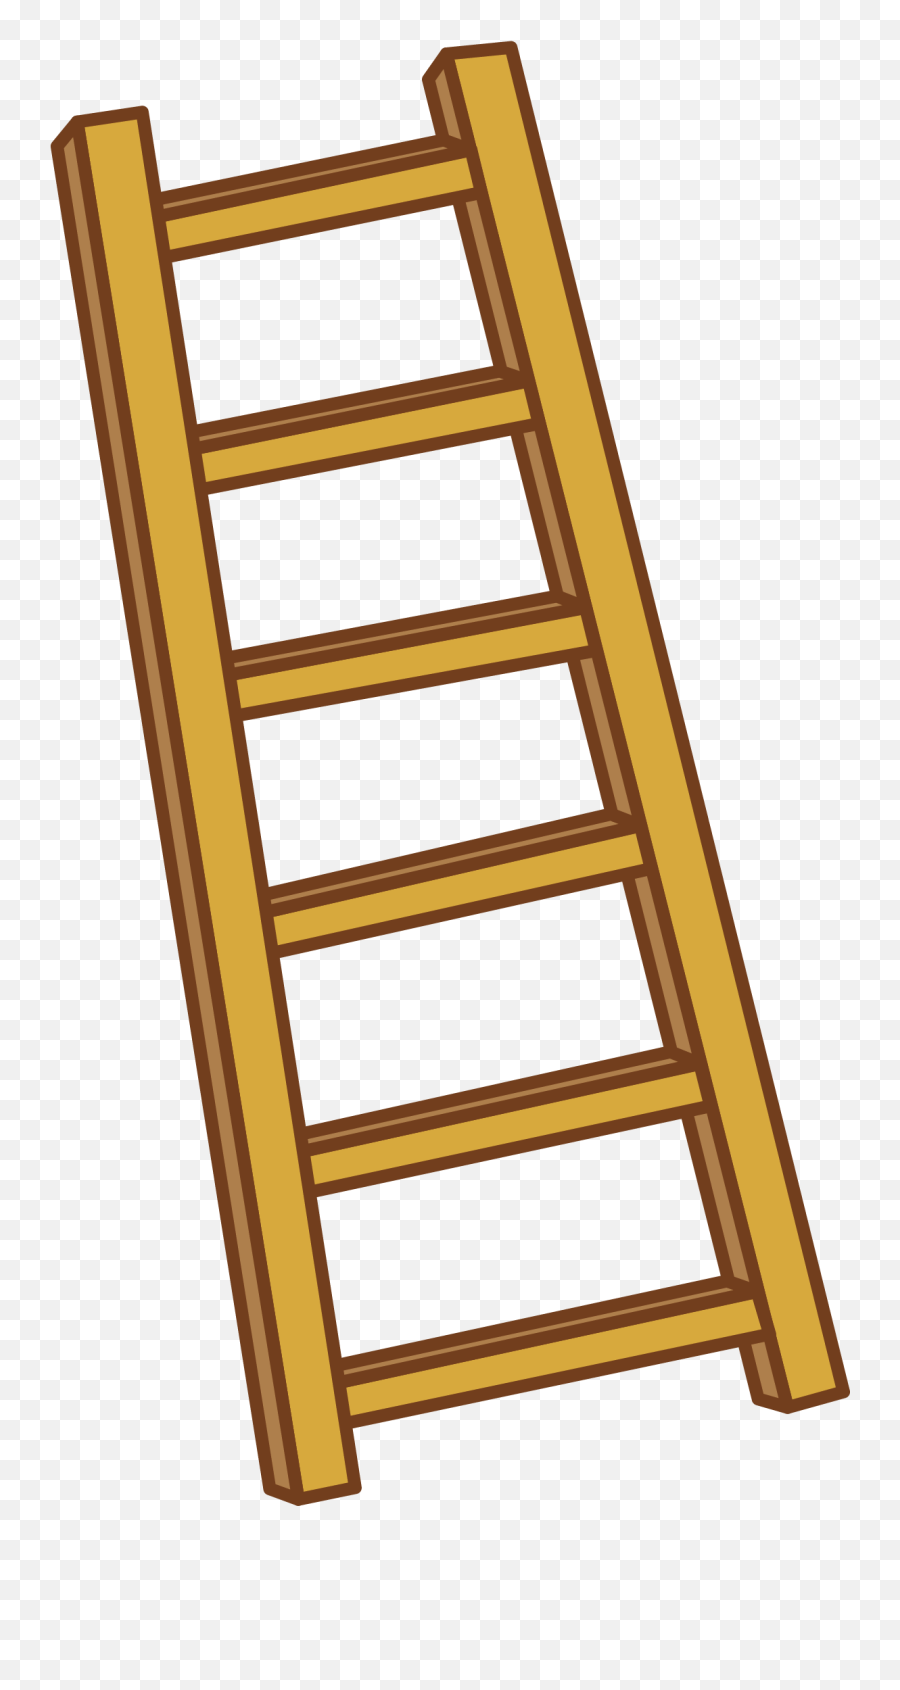 Ladder Clipart Png 5 Station - Ladder Clipart,Ladder Png